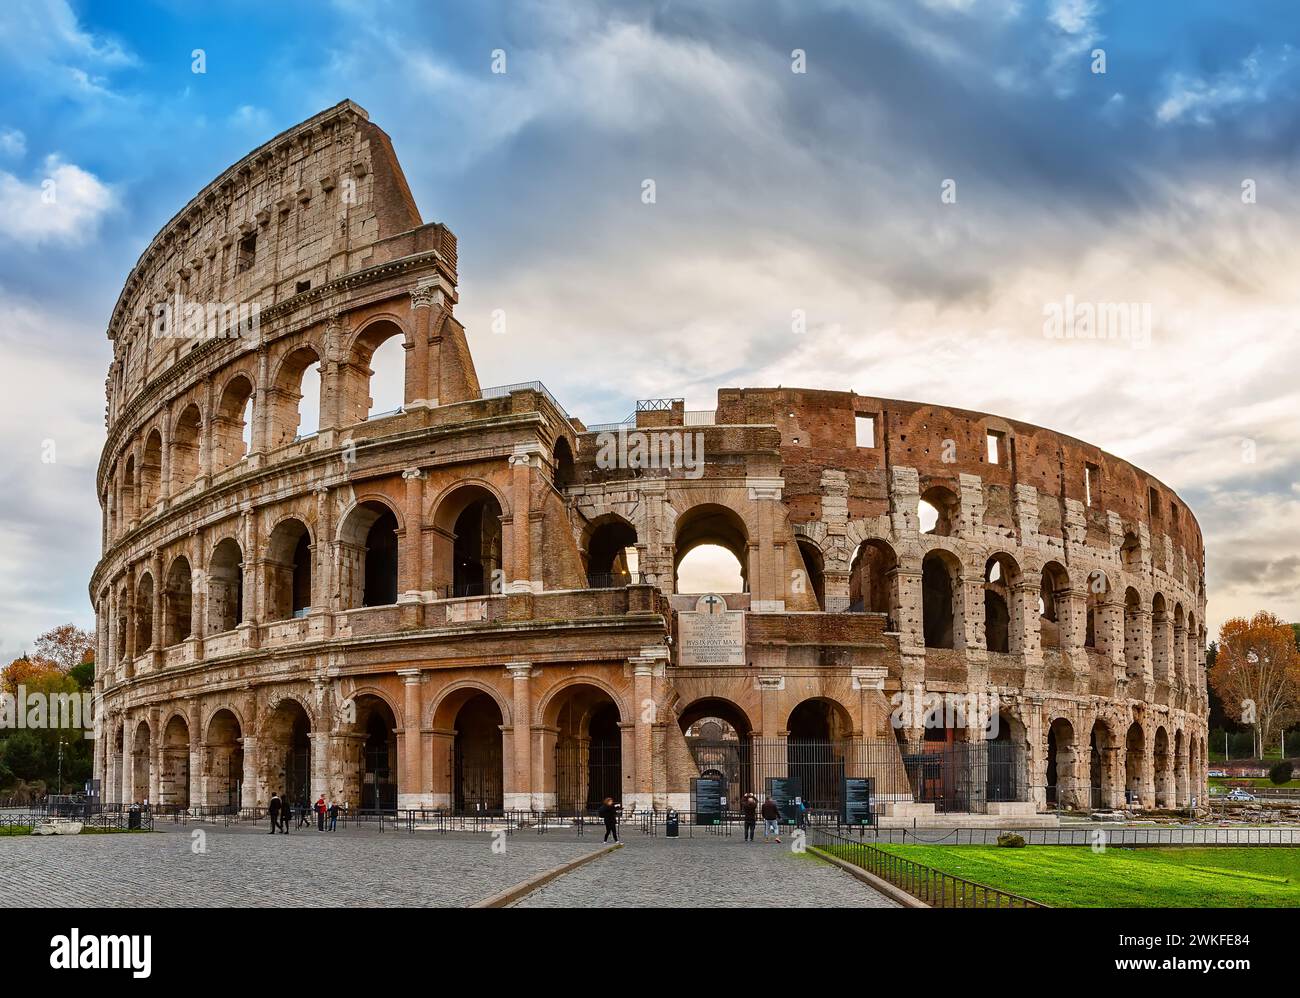 Il Colosseo è una delle principali attrazioni turistiche di Roma in Italia. Antiche rovine romane, paesaggio della città vecchia di Roma. Foto Stock